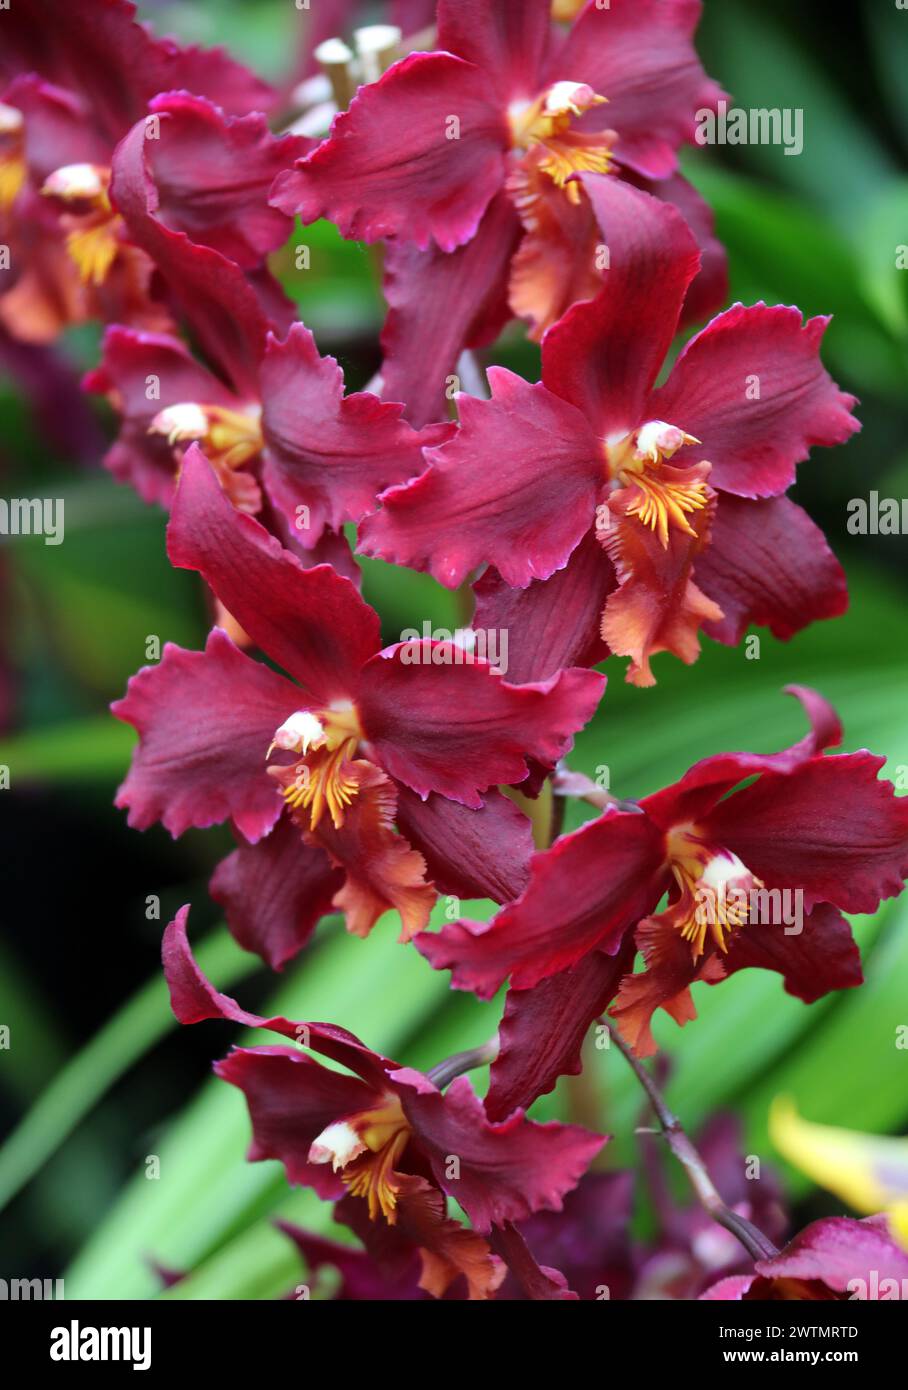 Orchid, Oncostele Diablo's Drum, Orchidaceae. Oncostele Diablo Way × Oncidium Joe's Drum hybrid. Stock Photo